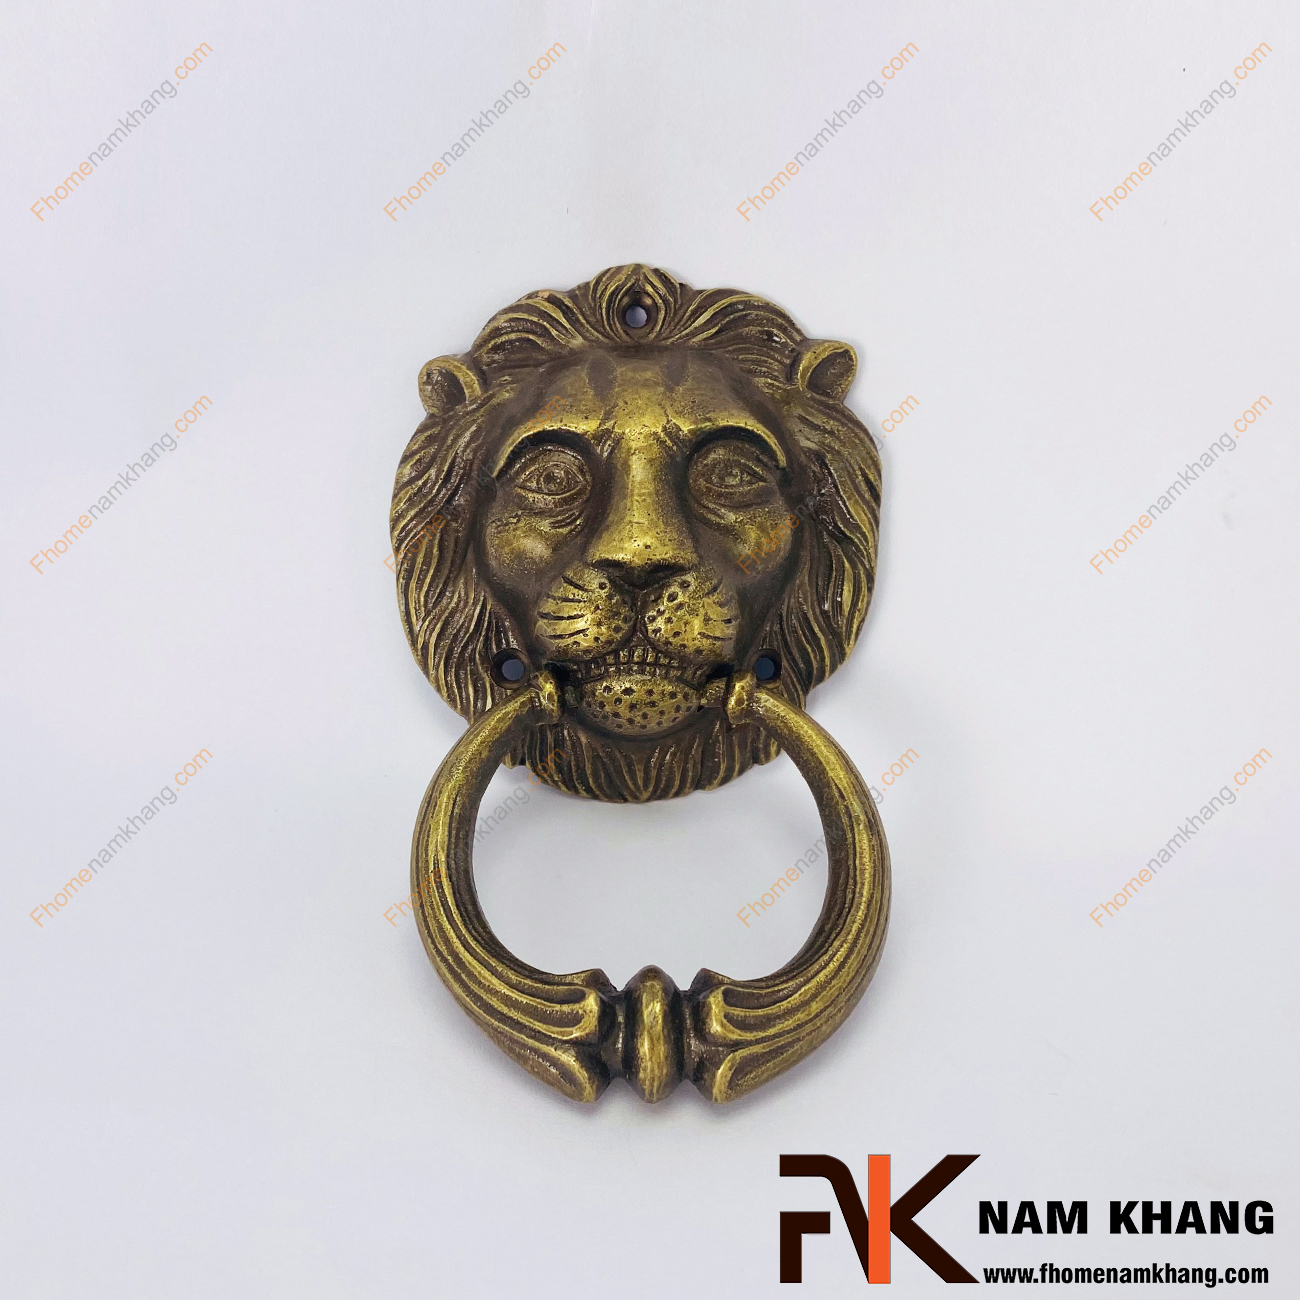 Núm đồng đầu sư tử NKD096 là một sản phẩm nội thất được chế tạo lấy cảm hứng từ sự uy quyền của loài sư tử dũng mãnh.